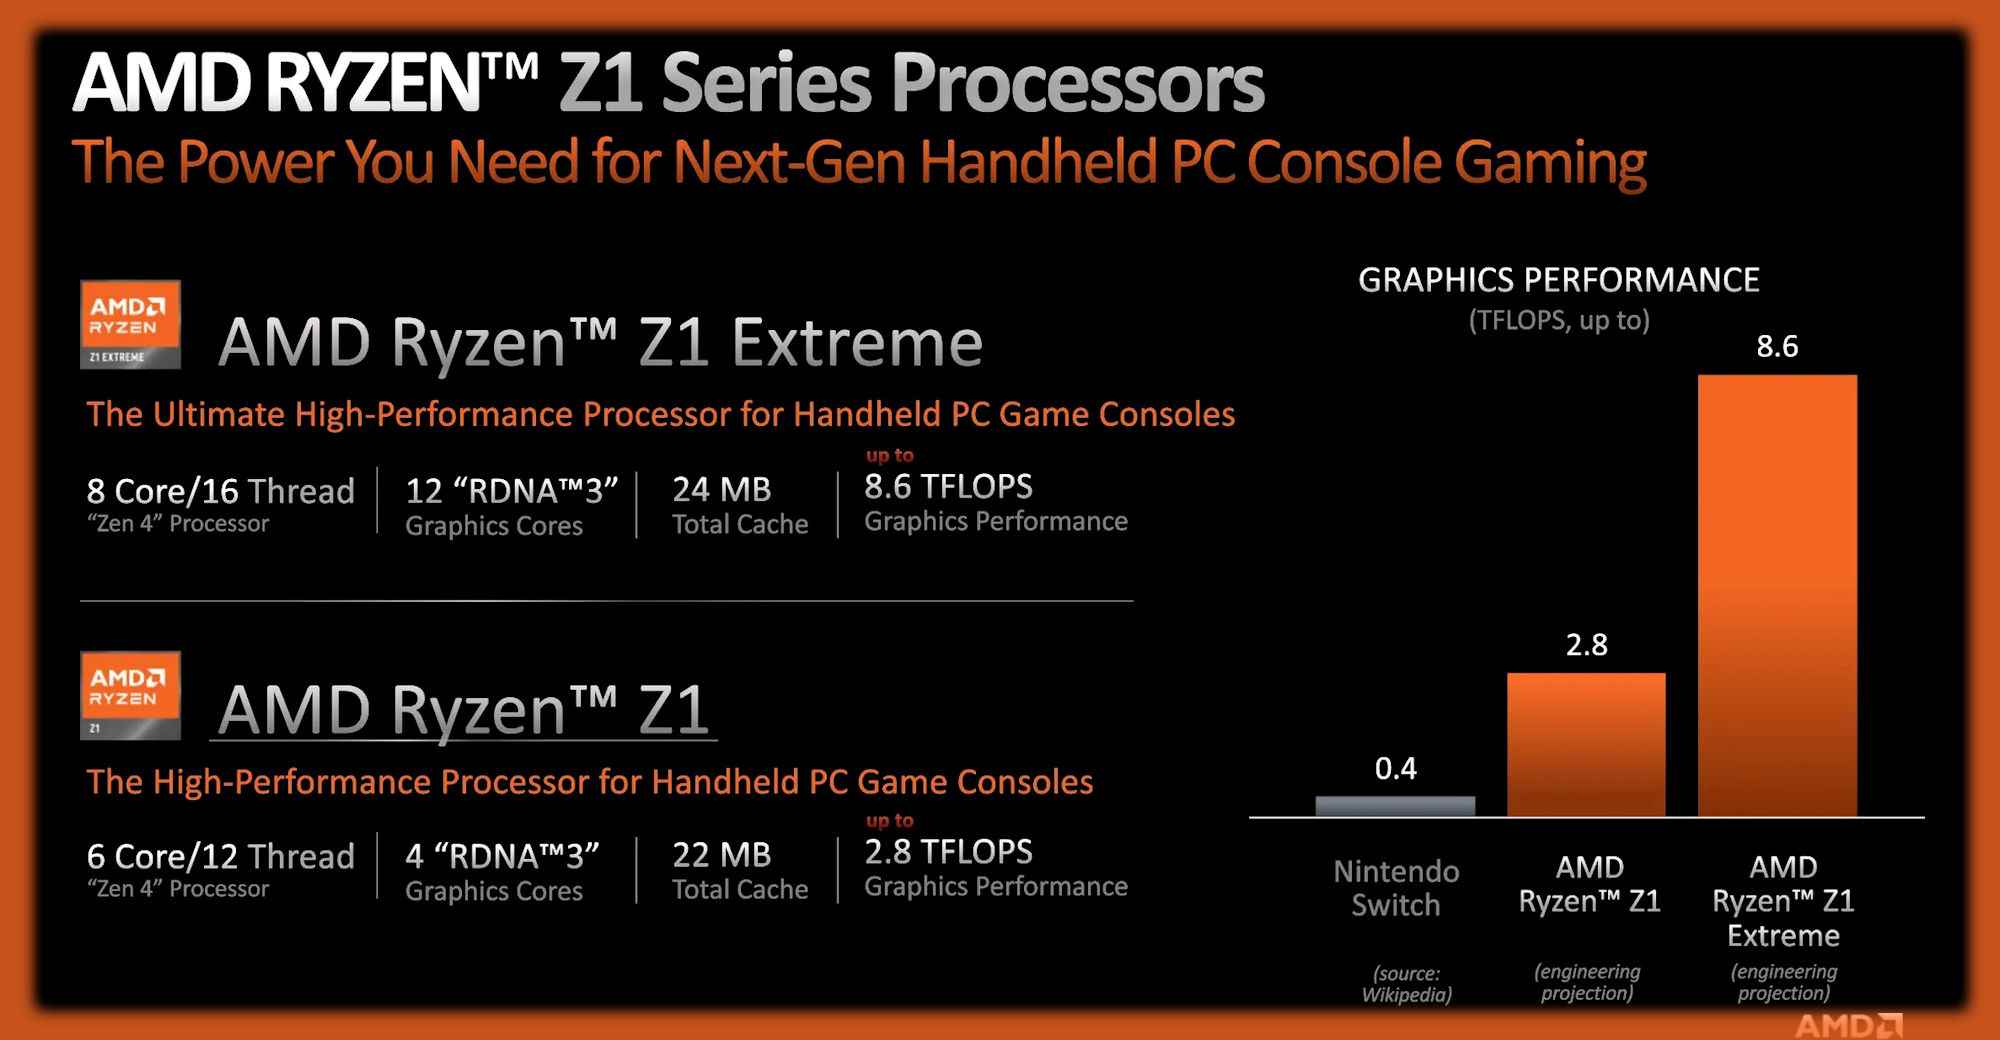 AMD Ryzen Z1 ve Z1 Extreme işlemcilerin özelliklerini ve performans ayrıntılarını detaylandıran bilgi slaytları.